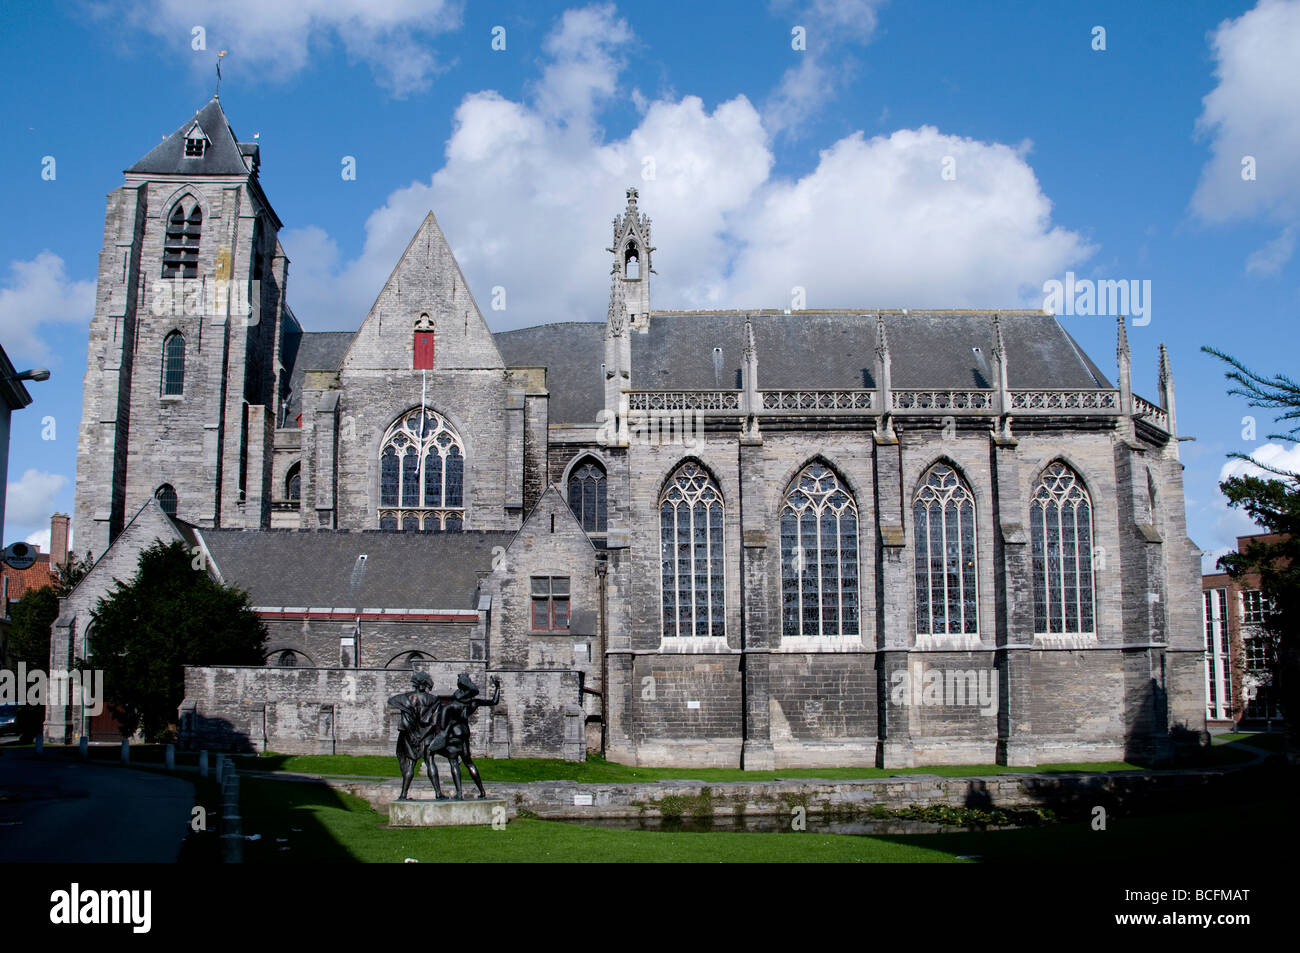 Ville historique belge Kortrijk Belgique Flandre Occidentale Banque D'Images